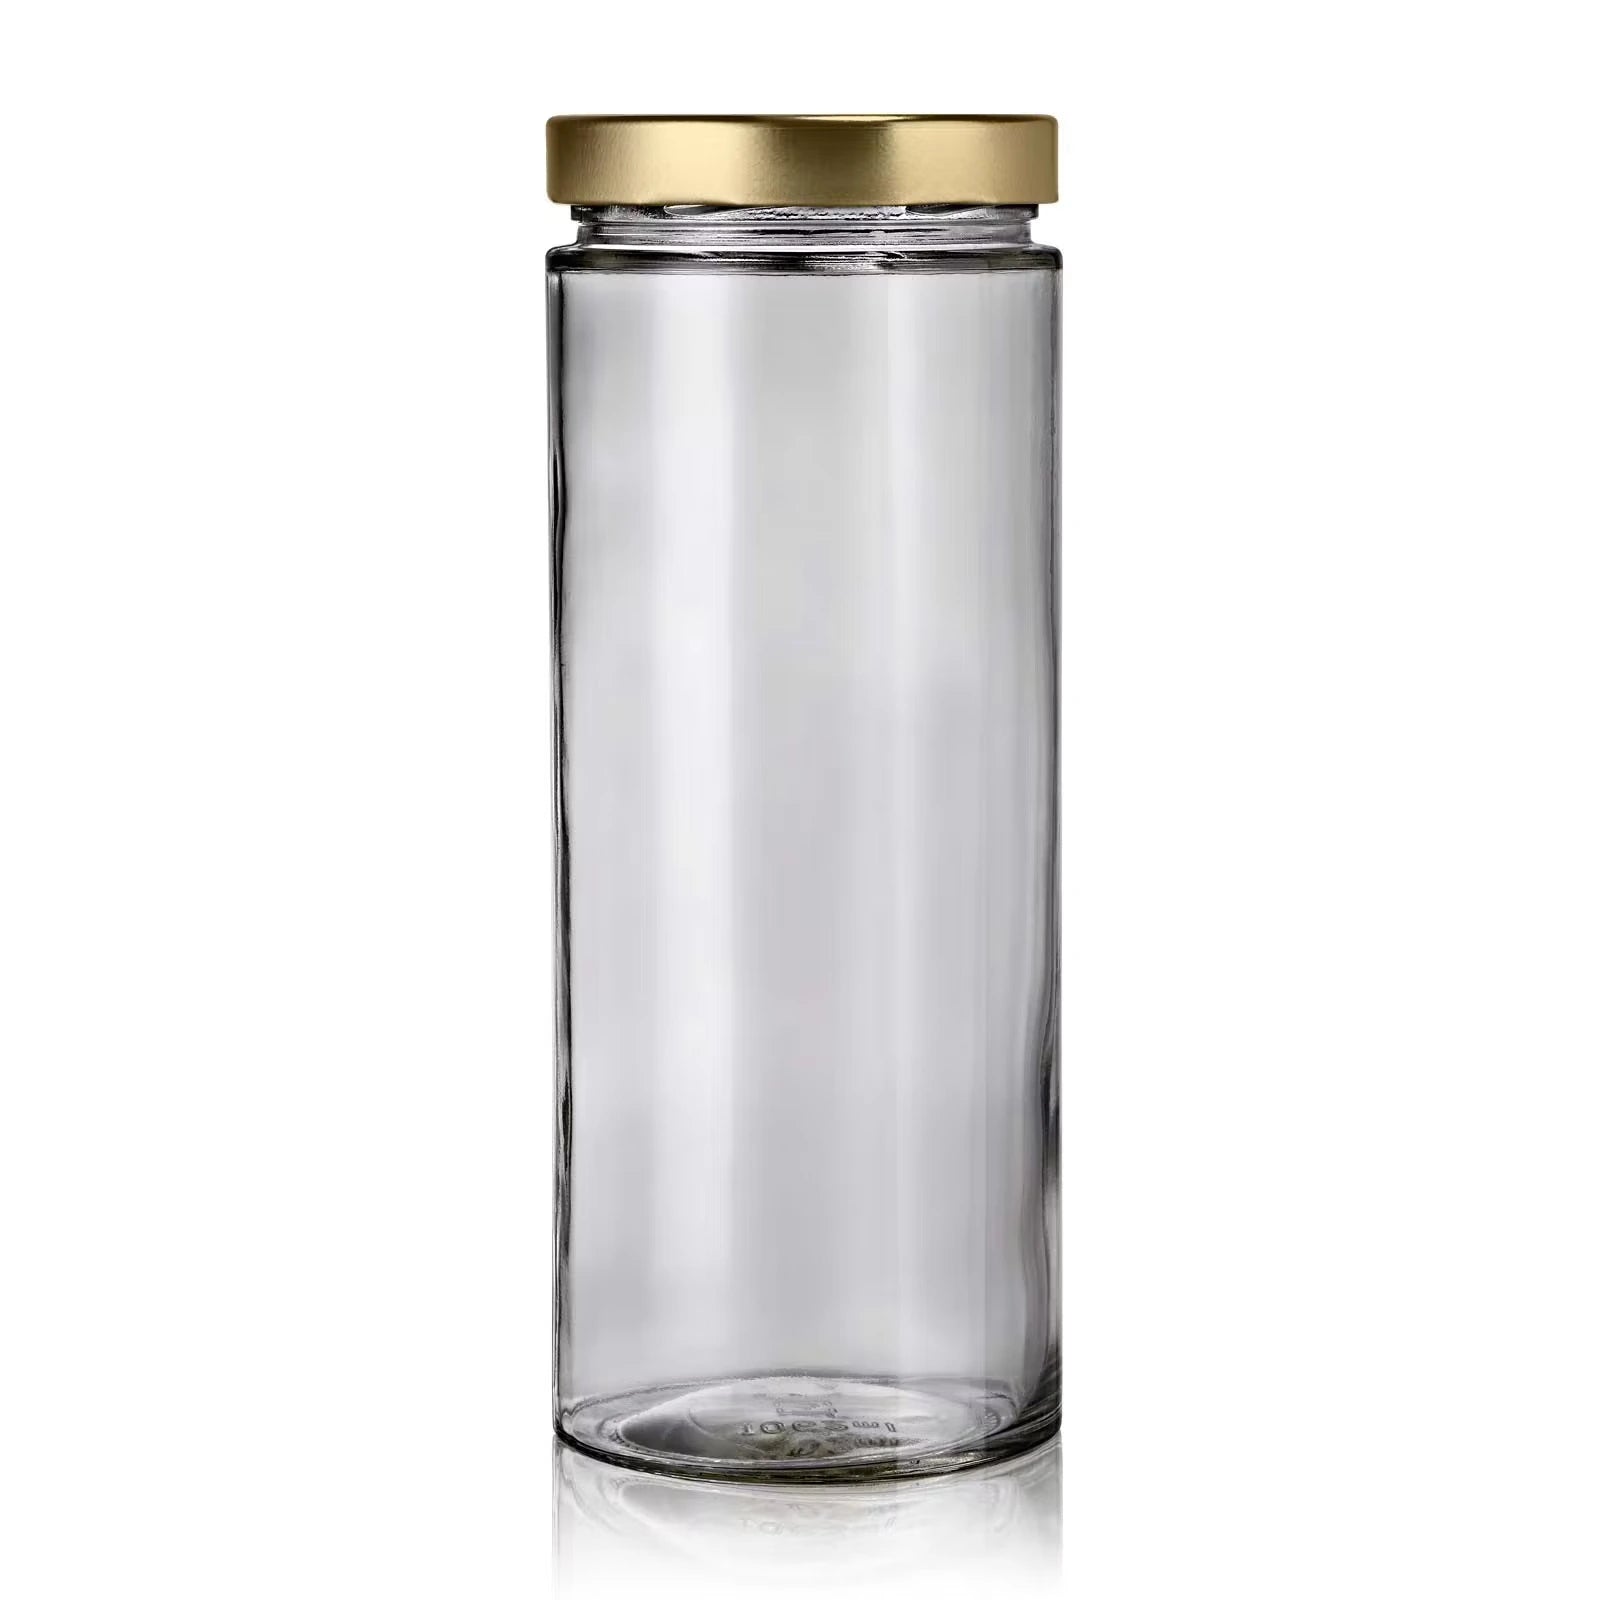 Grand bocal en verre recyclé de 1062 mL moderne avec couvercle or